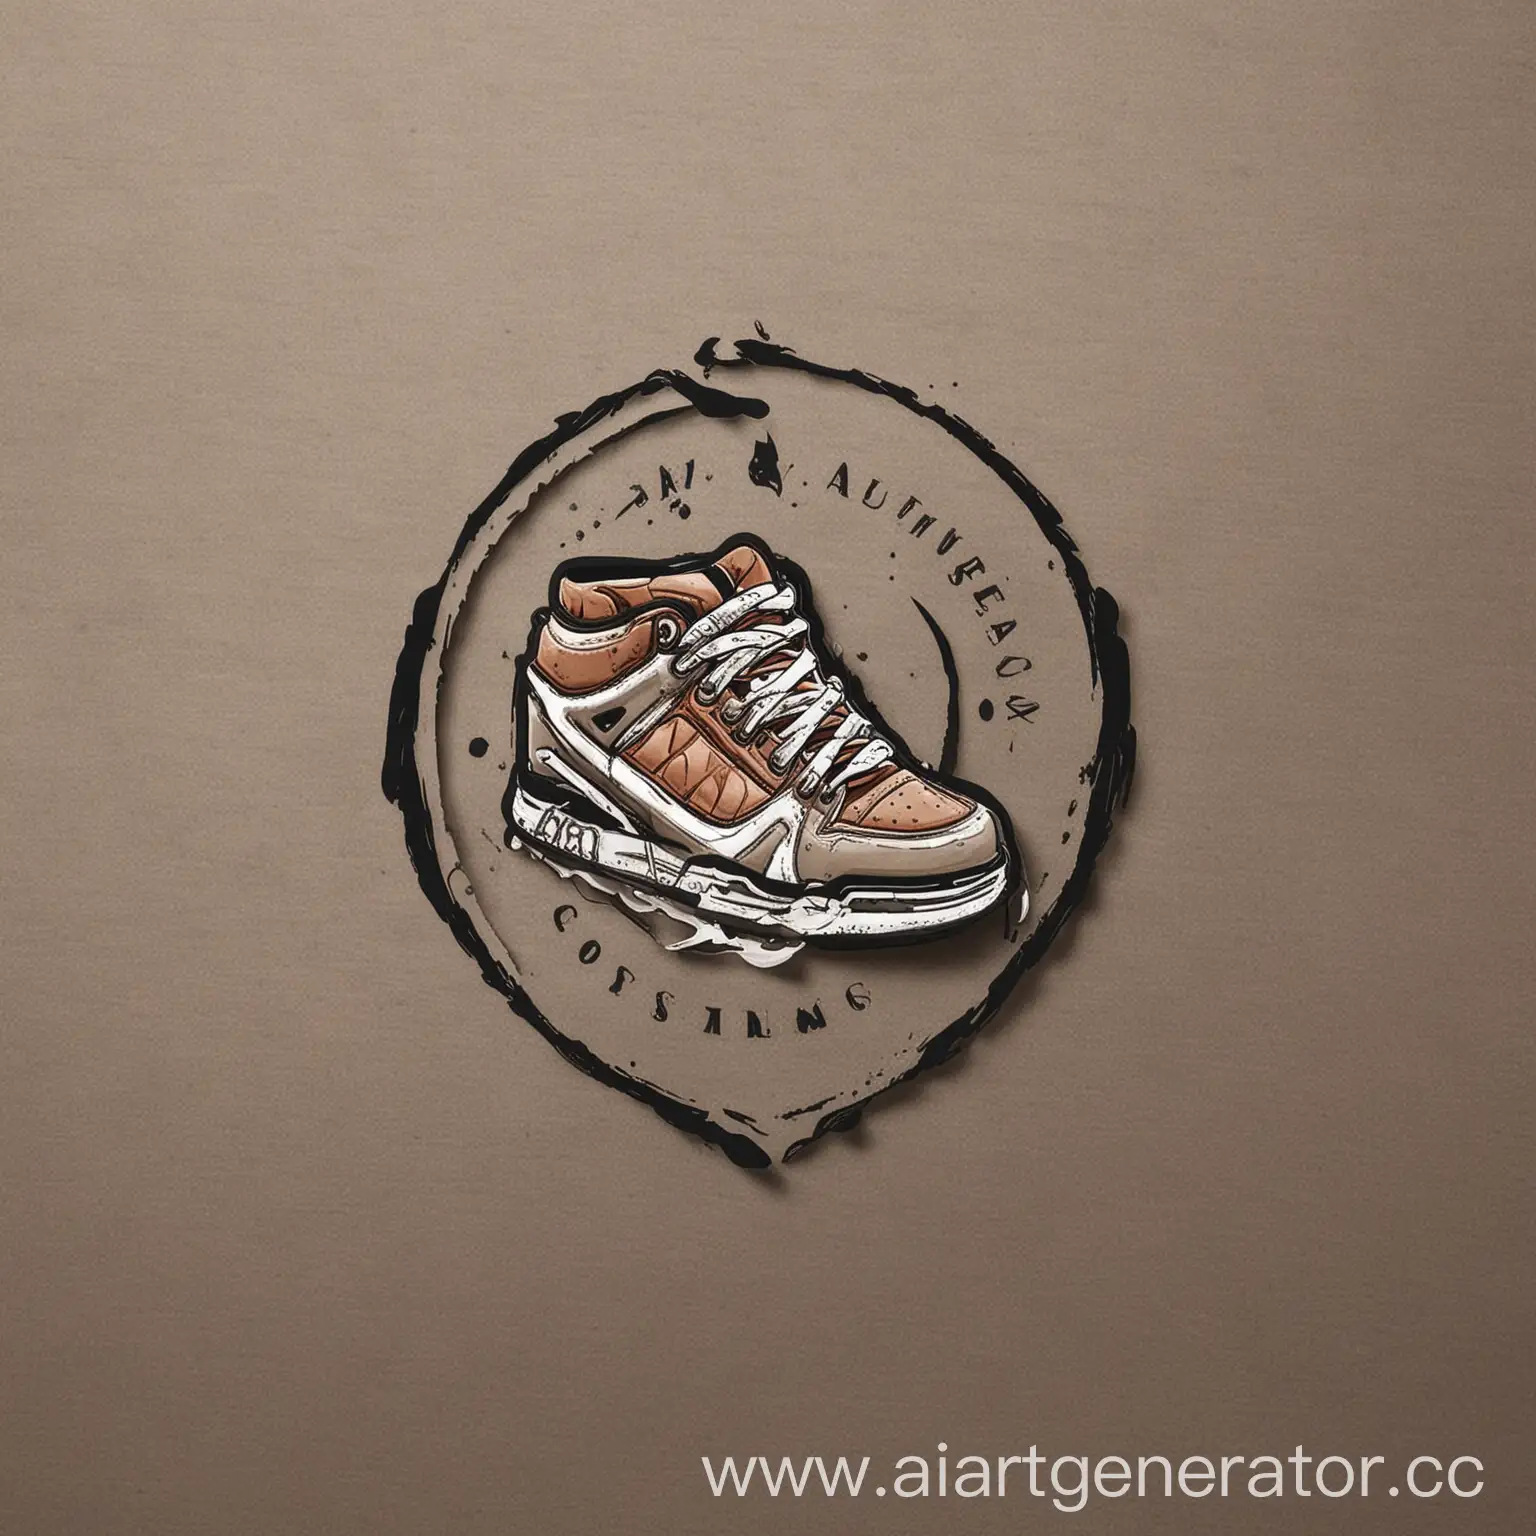 Требуется создать уникальный и привлекательный логотип для магазина кроссовок. Логотип должен быть современным, стильным и легко узнаваемым. Он должен отражать основные ценности бренда: комфорт, качество и индивидуальность.